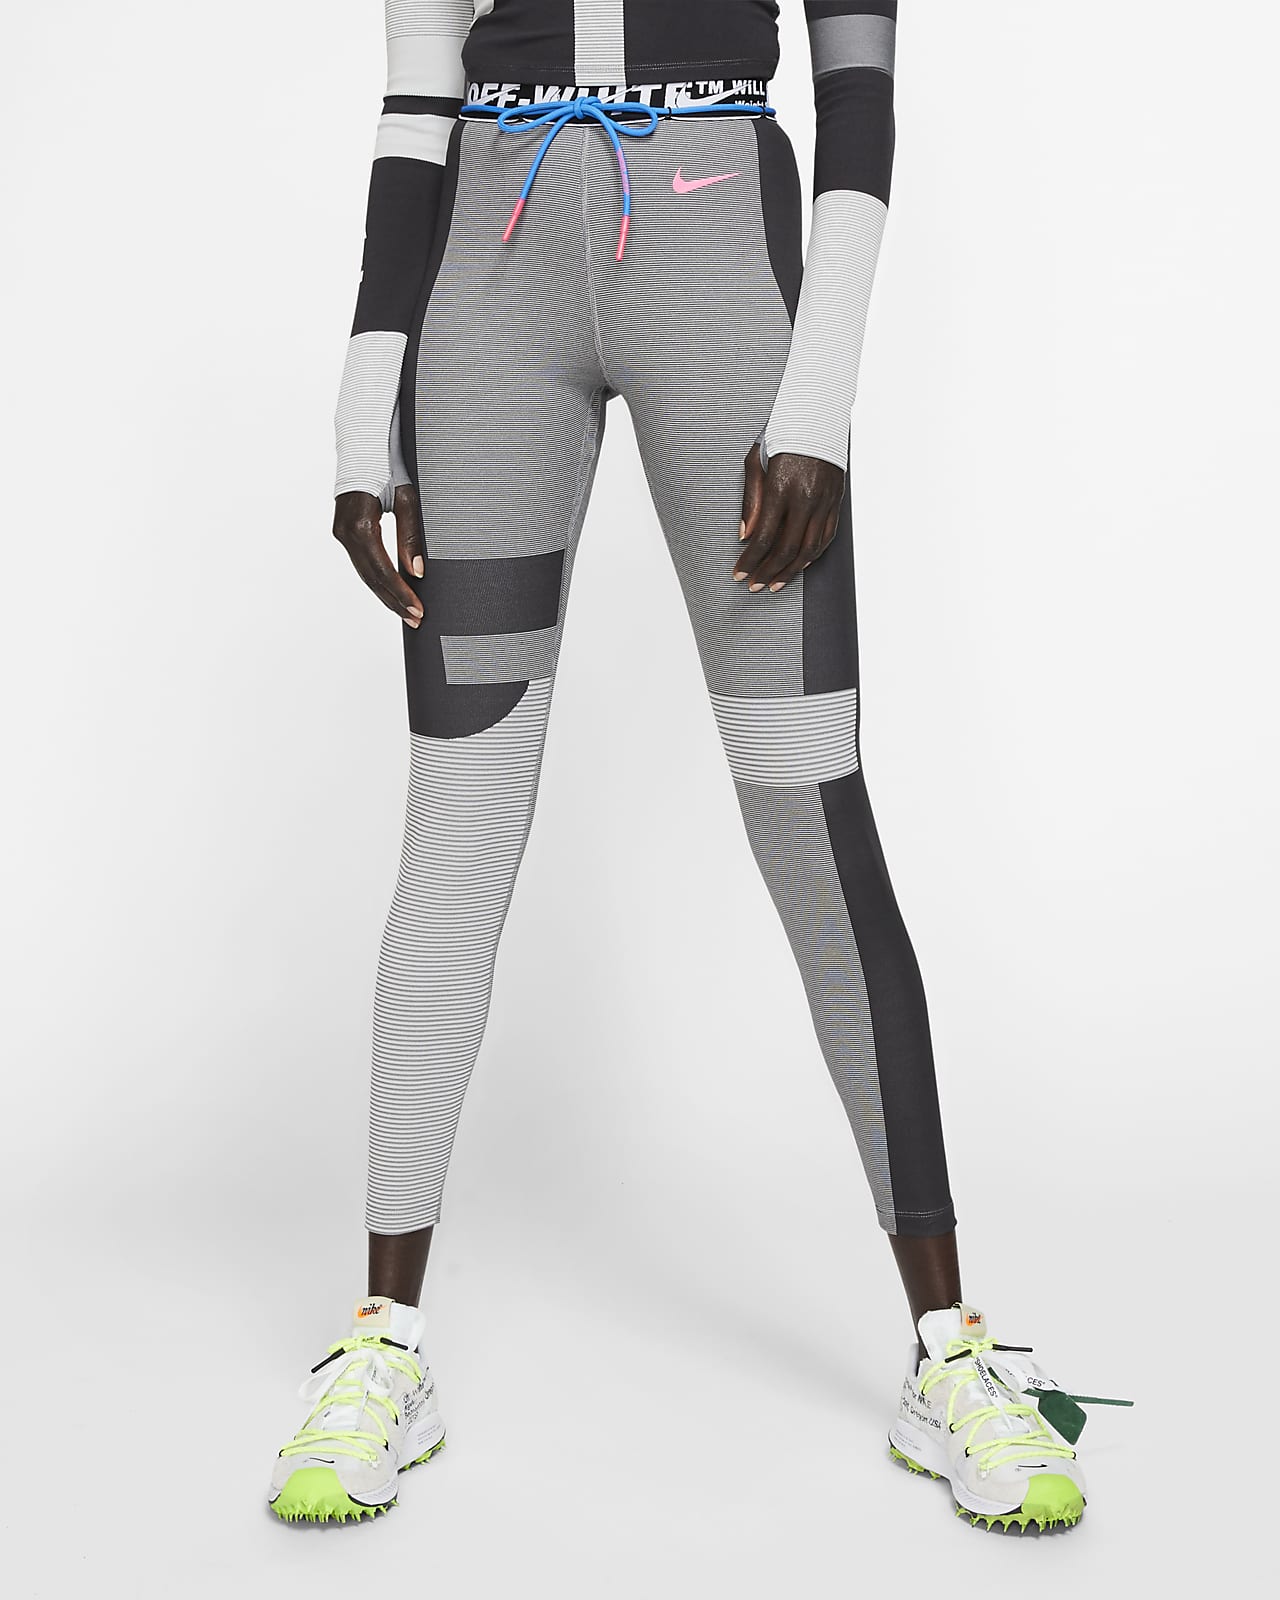 High-Waisted Running Leggings. Nike JP